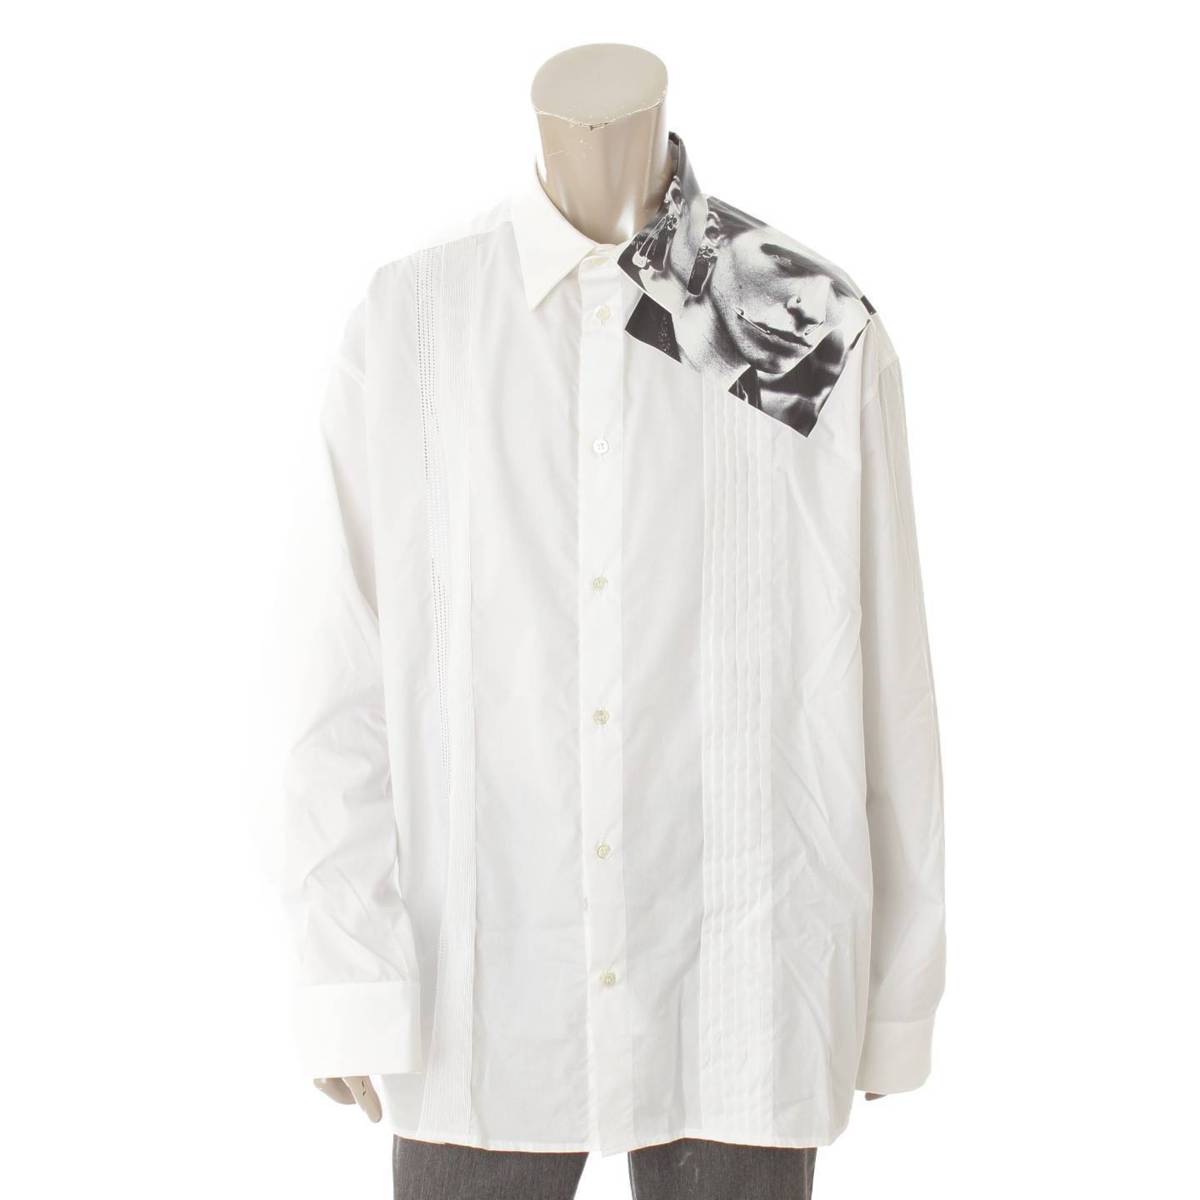 ラフ シモンズ(Raf Simons) メンズ 19SS Cropped shirt プリント シャツ 191-293G ホワイト 50